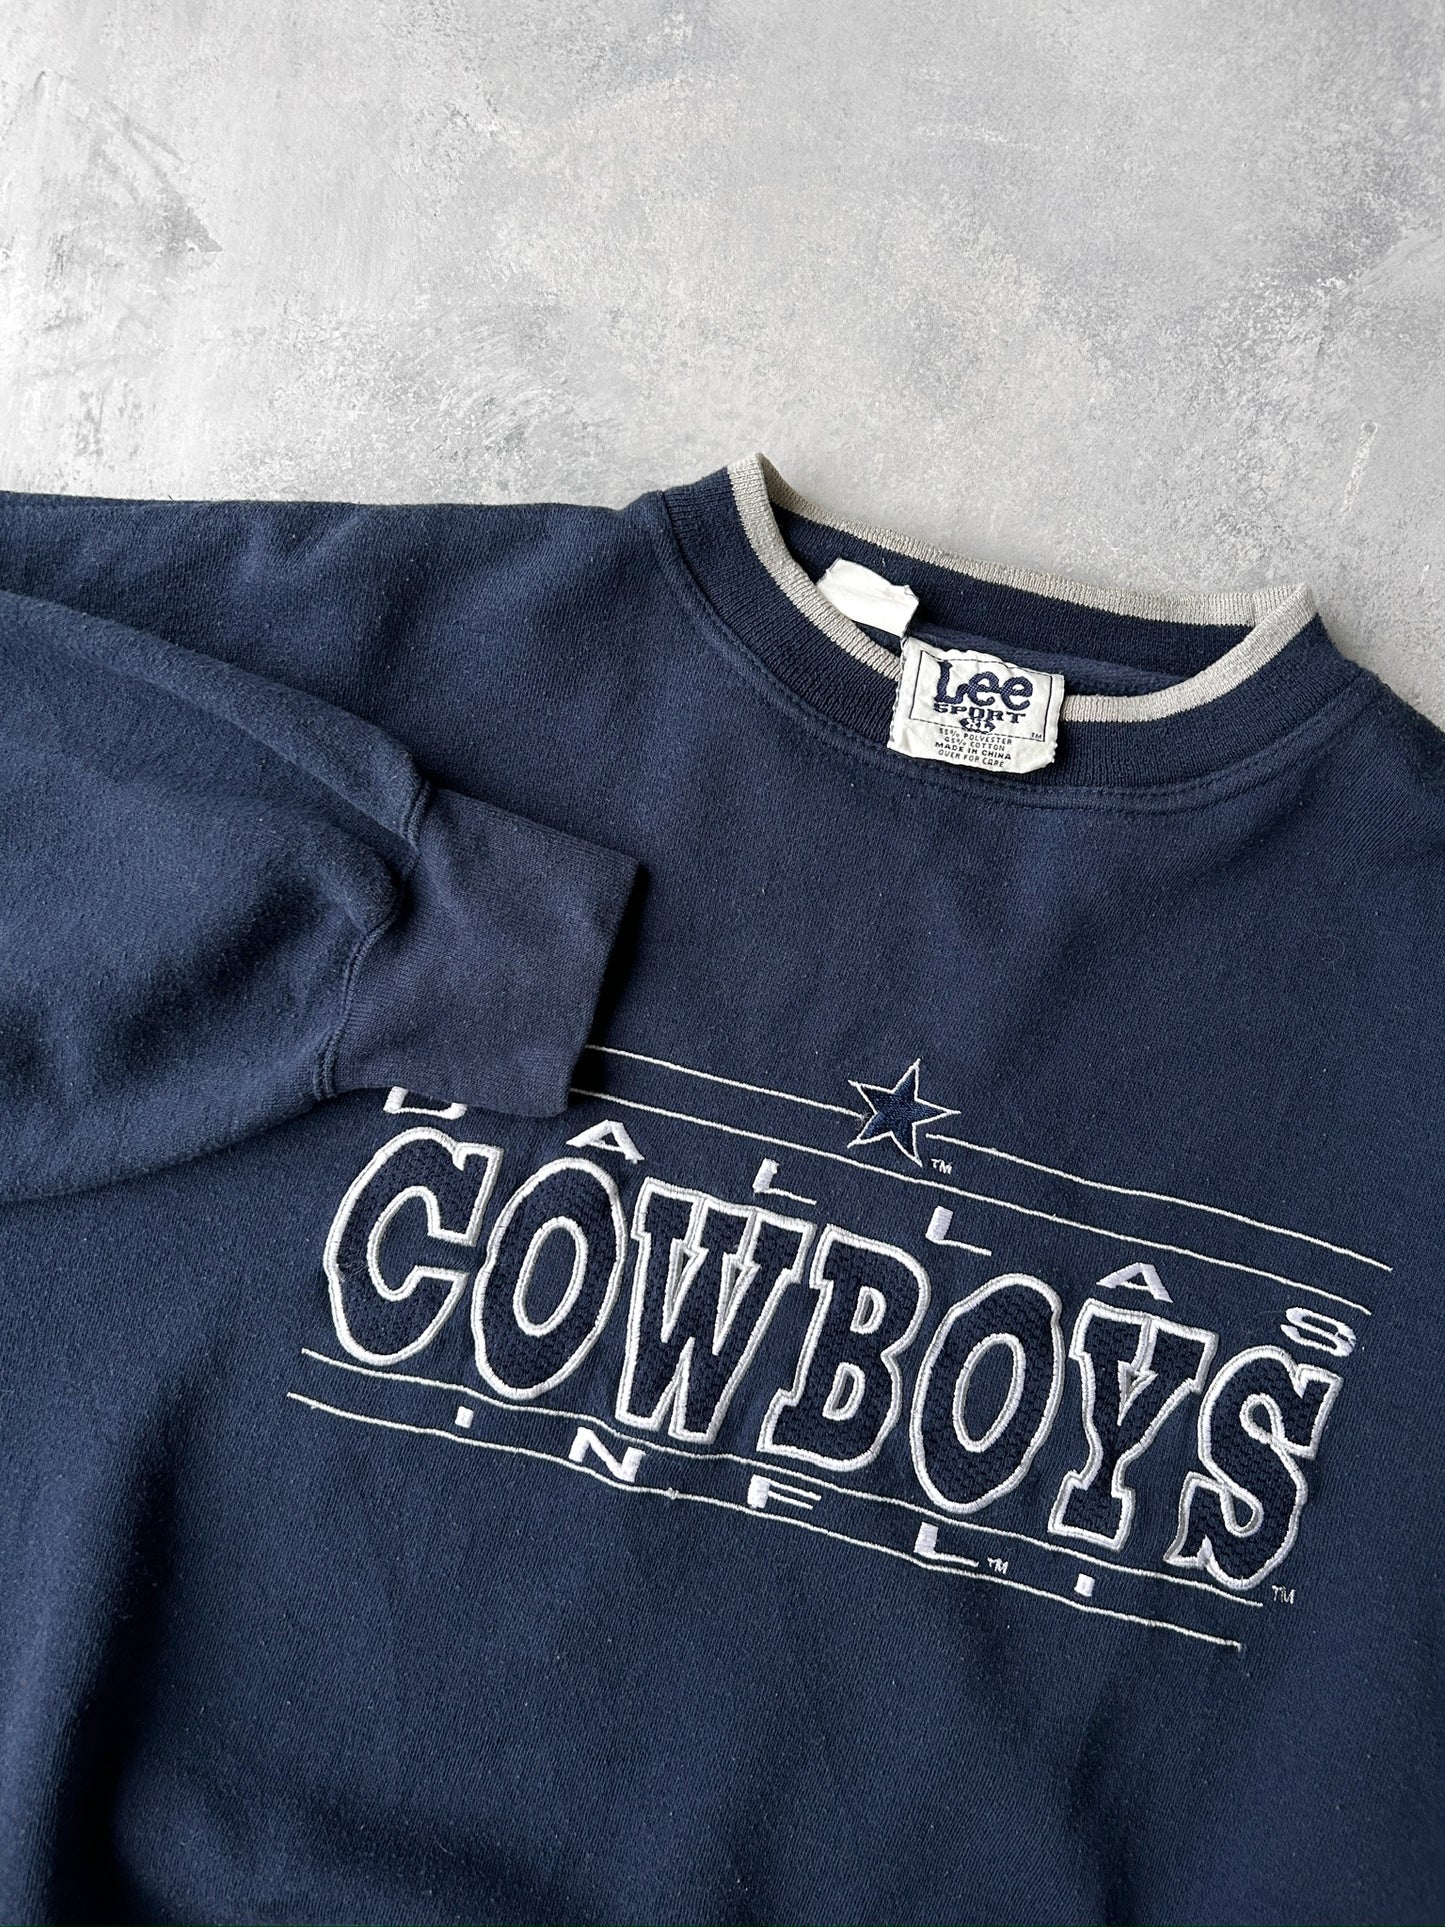 Dallas Cowboys Sweatshirt 90's - XL